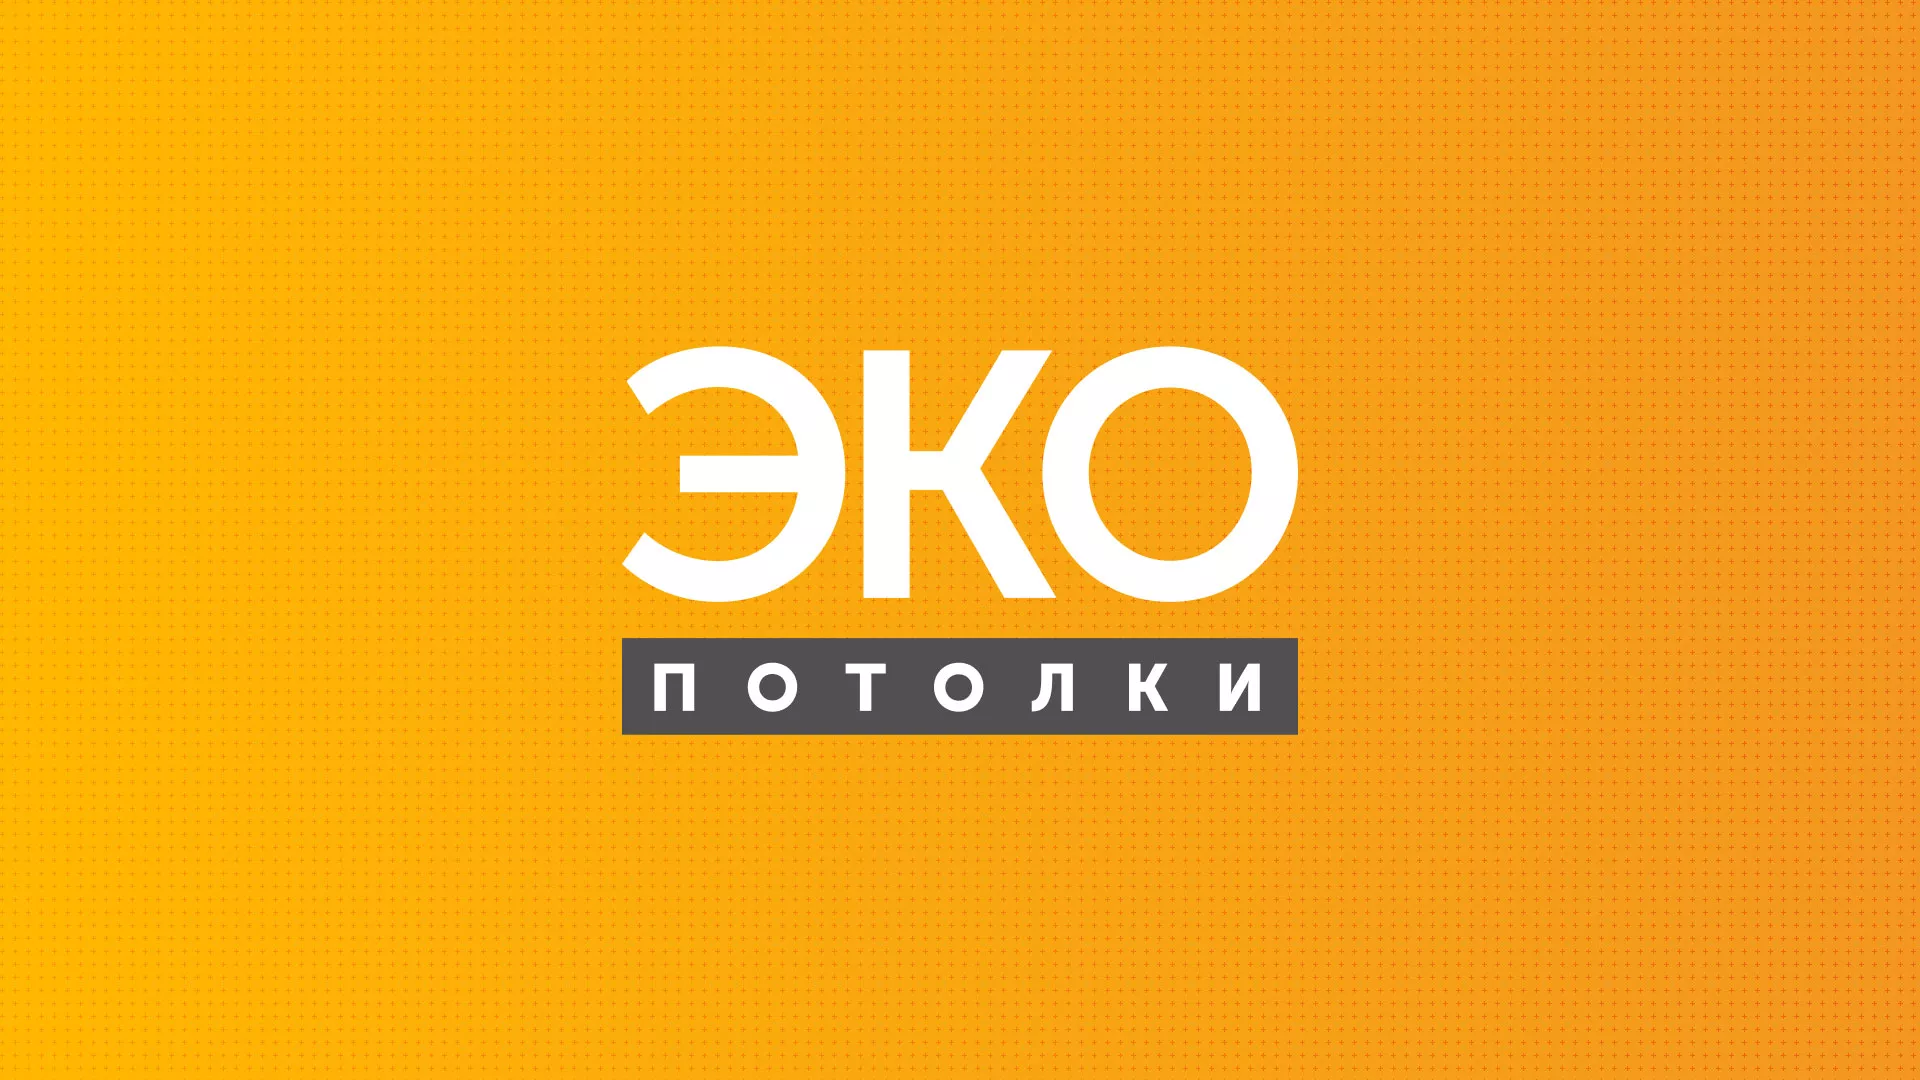 Разработка сайта по натяжным потолкам «Эко Потолки» в Уварово